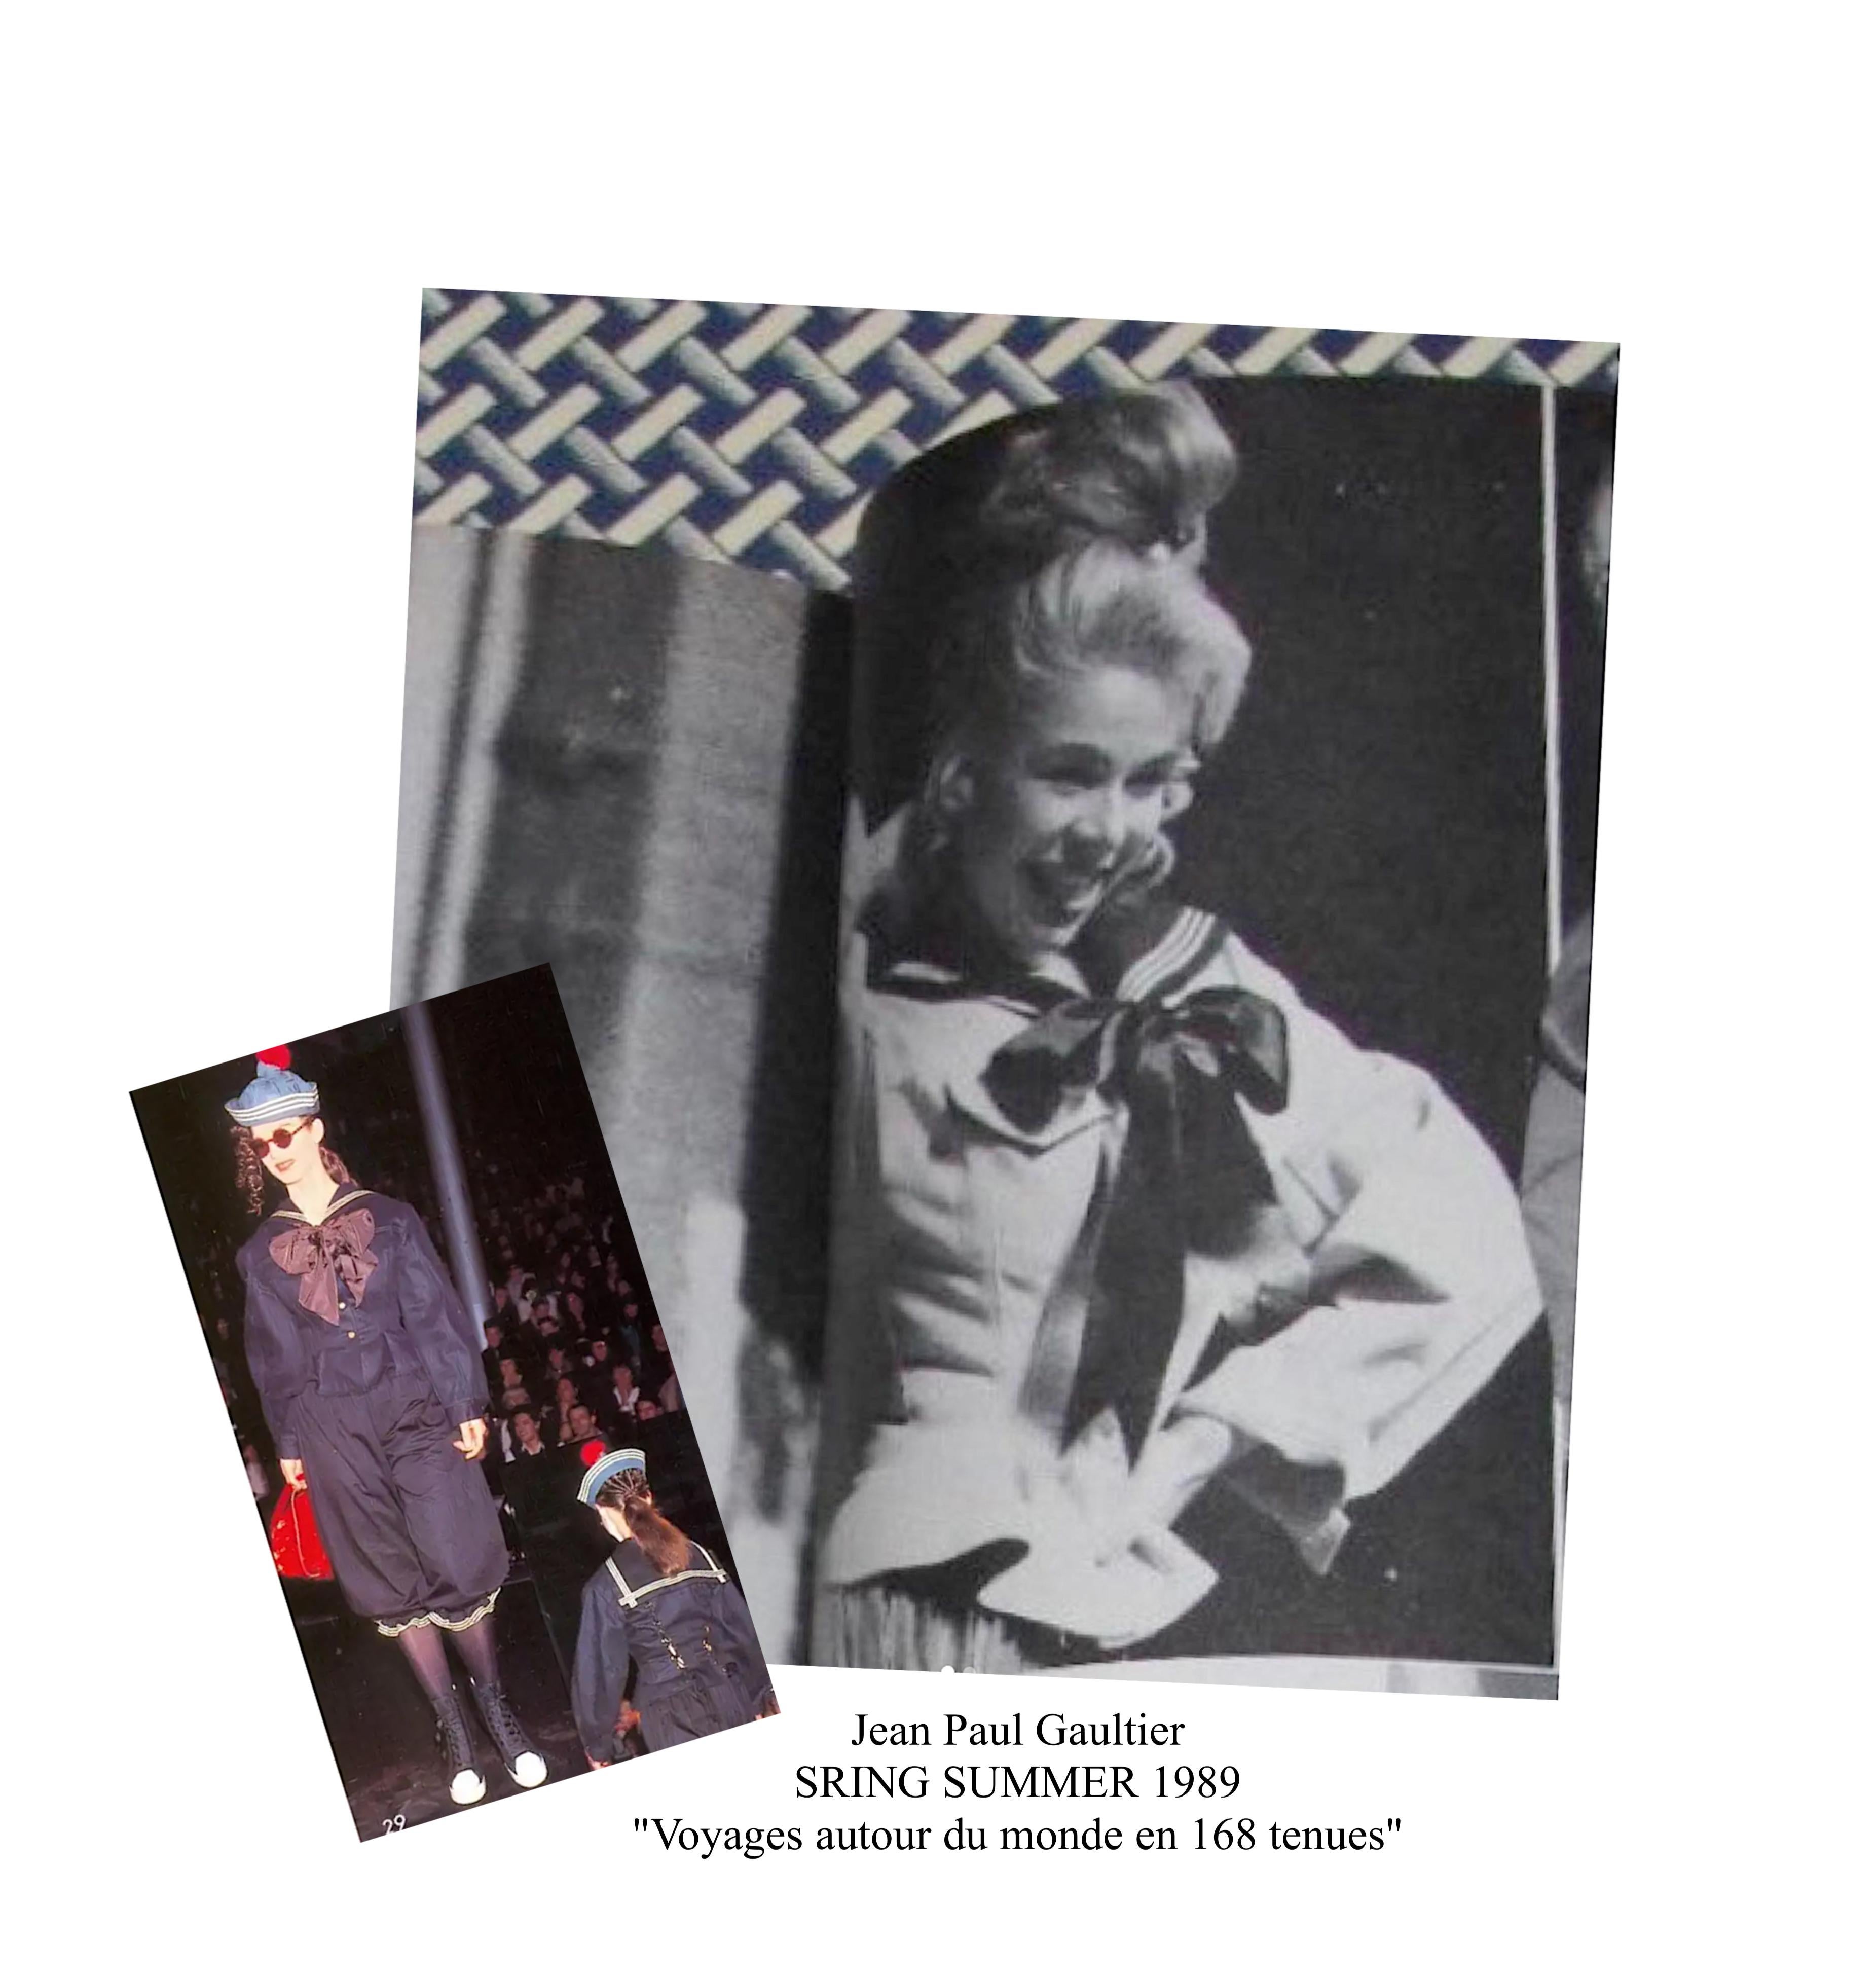 Esta icónica cazadora vintage de manga larga, confeccionada con lona de algodón vaquero marino, apareció en la colección Primavera-Verano 1989 de Jean Paul Gaultier titulada 